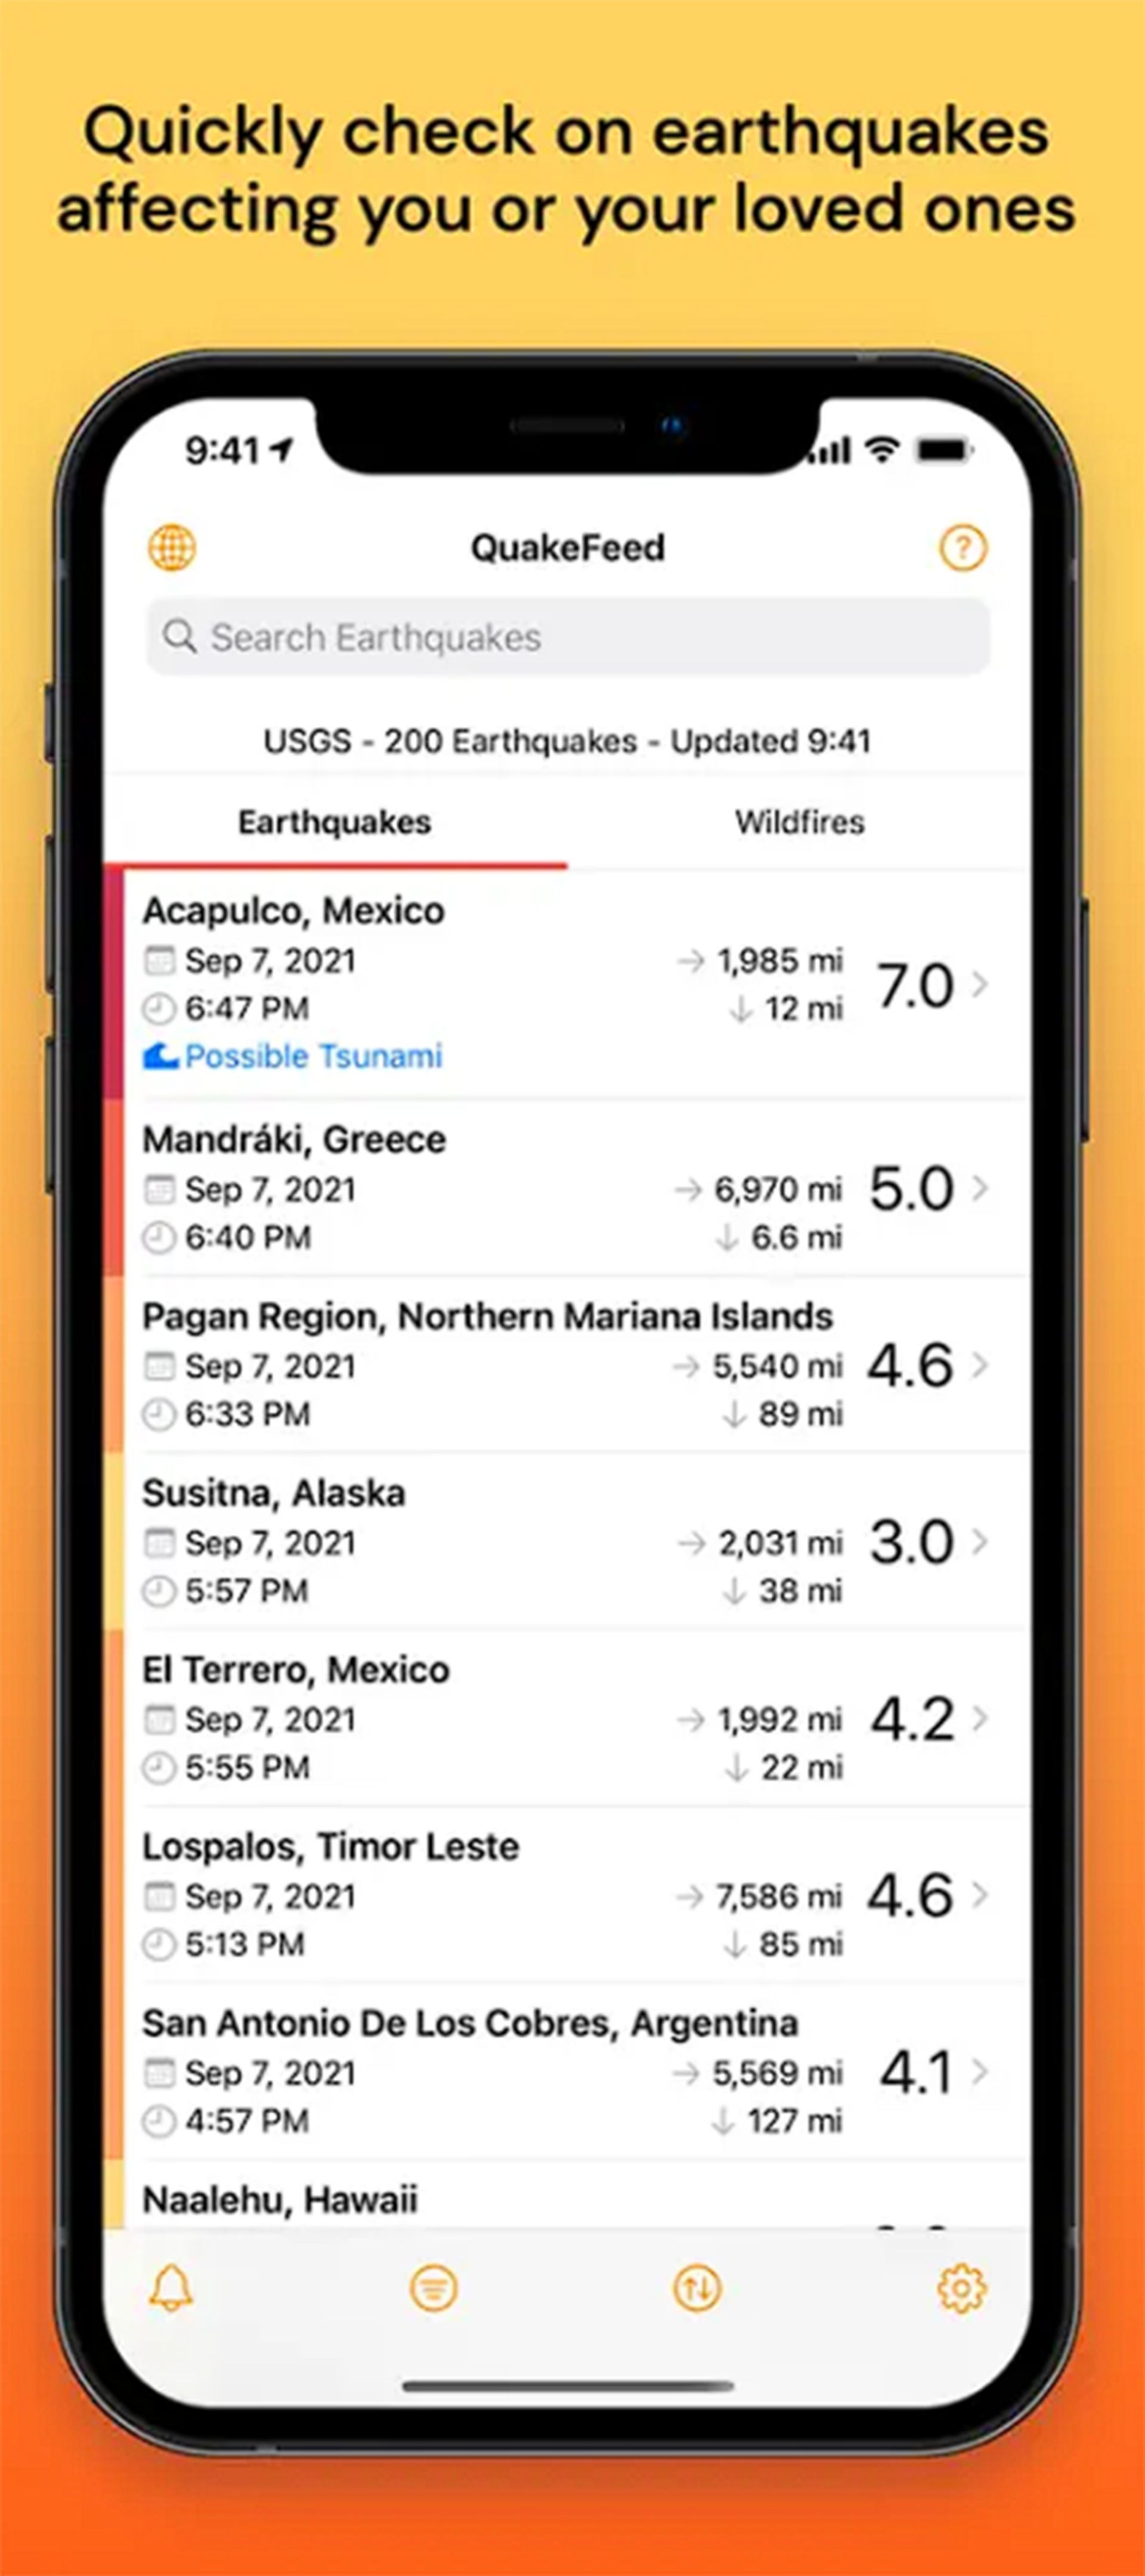 صفحه ای مملو از اطلاعات مربوط به زلزله های مختلف در بخشی خاص از زمین